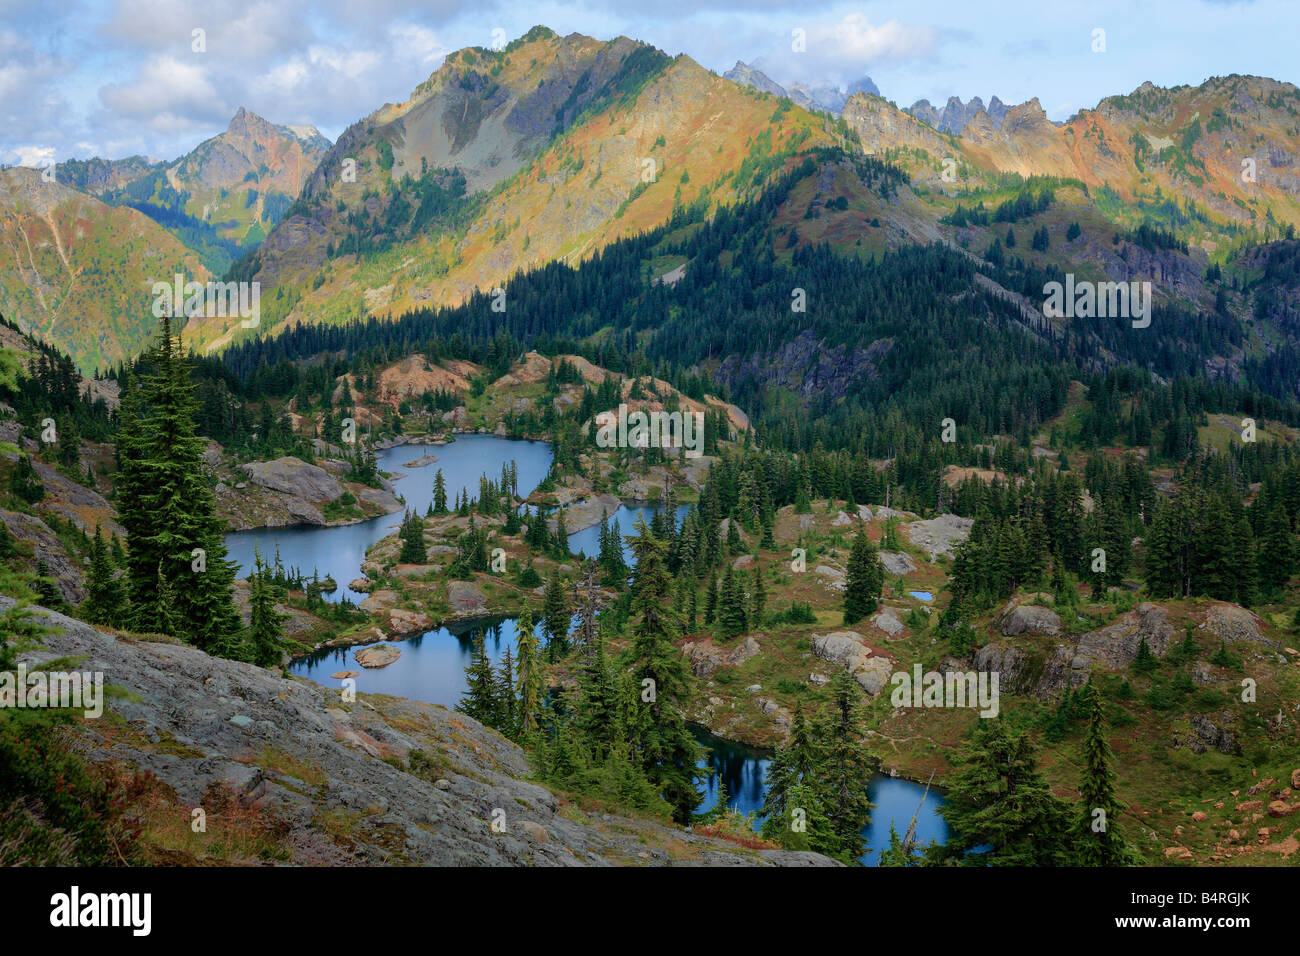 Rampart Lakes area of Alpine Lakes Wilderness, Washington Stock Photo